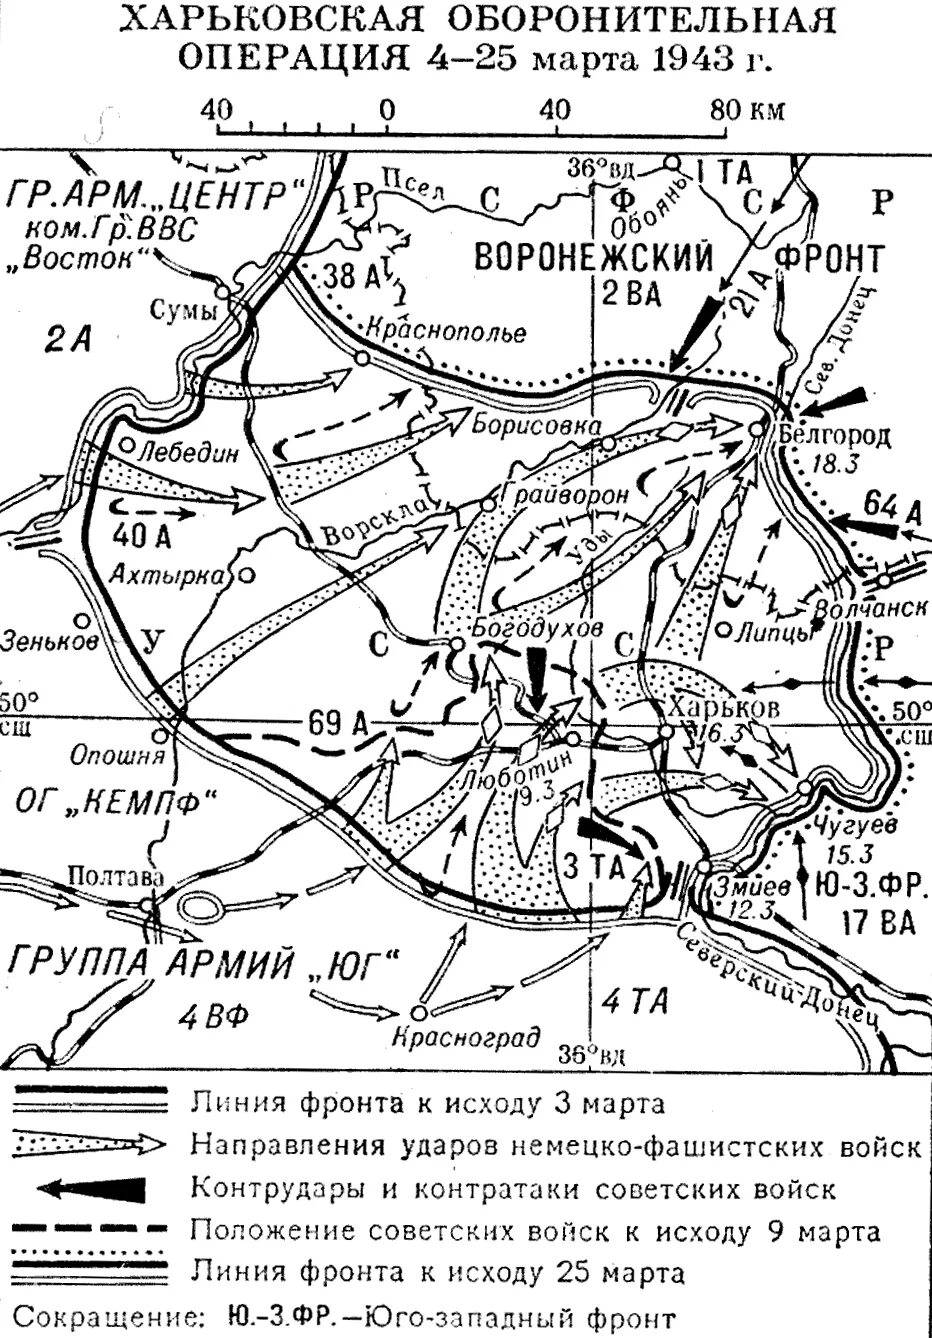 Фронт на харьковском направлении. Харьковская наступательная операция 1943 года.